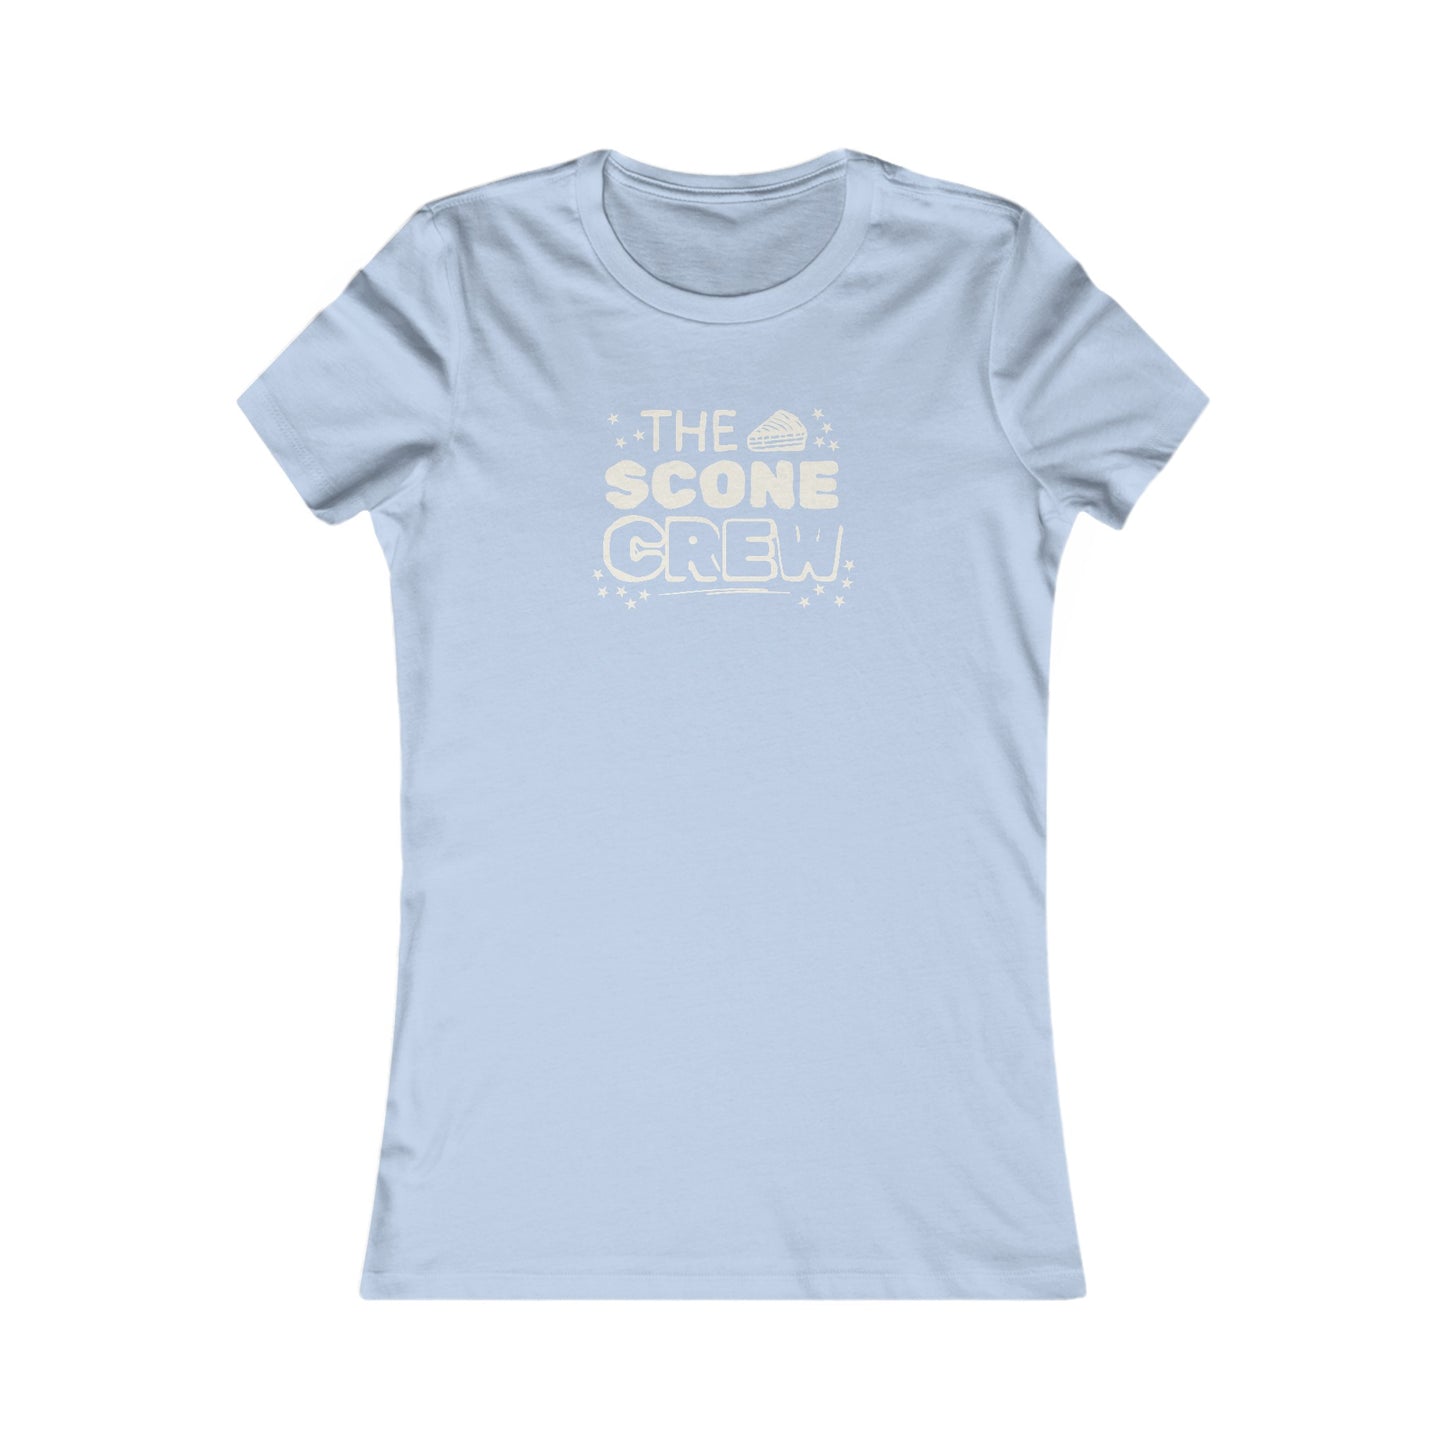 The Scone Crew Women's T-Shirt